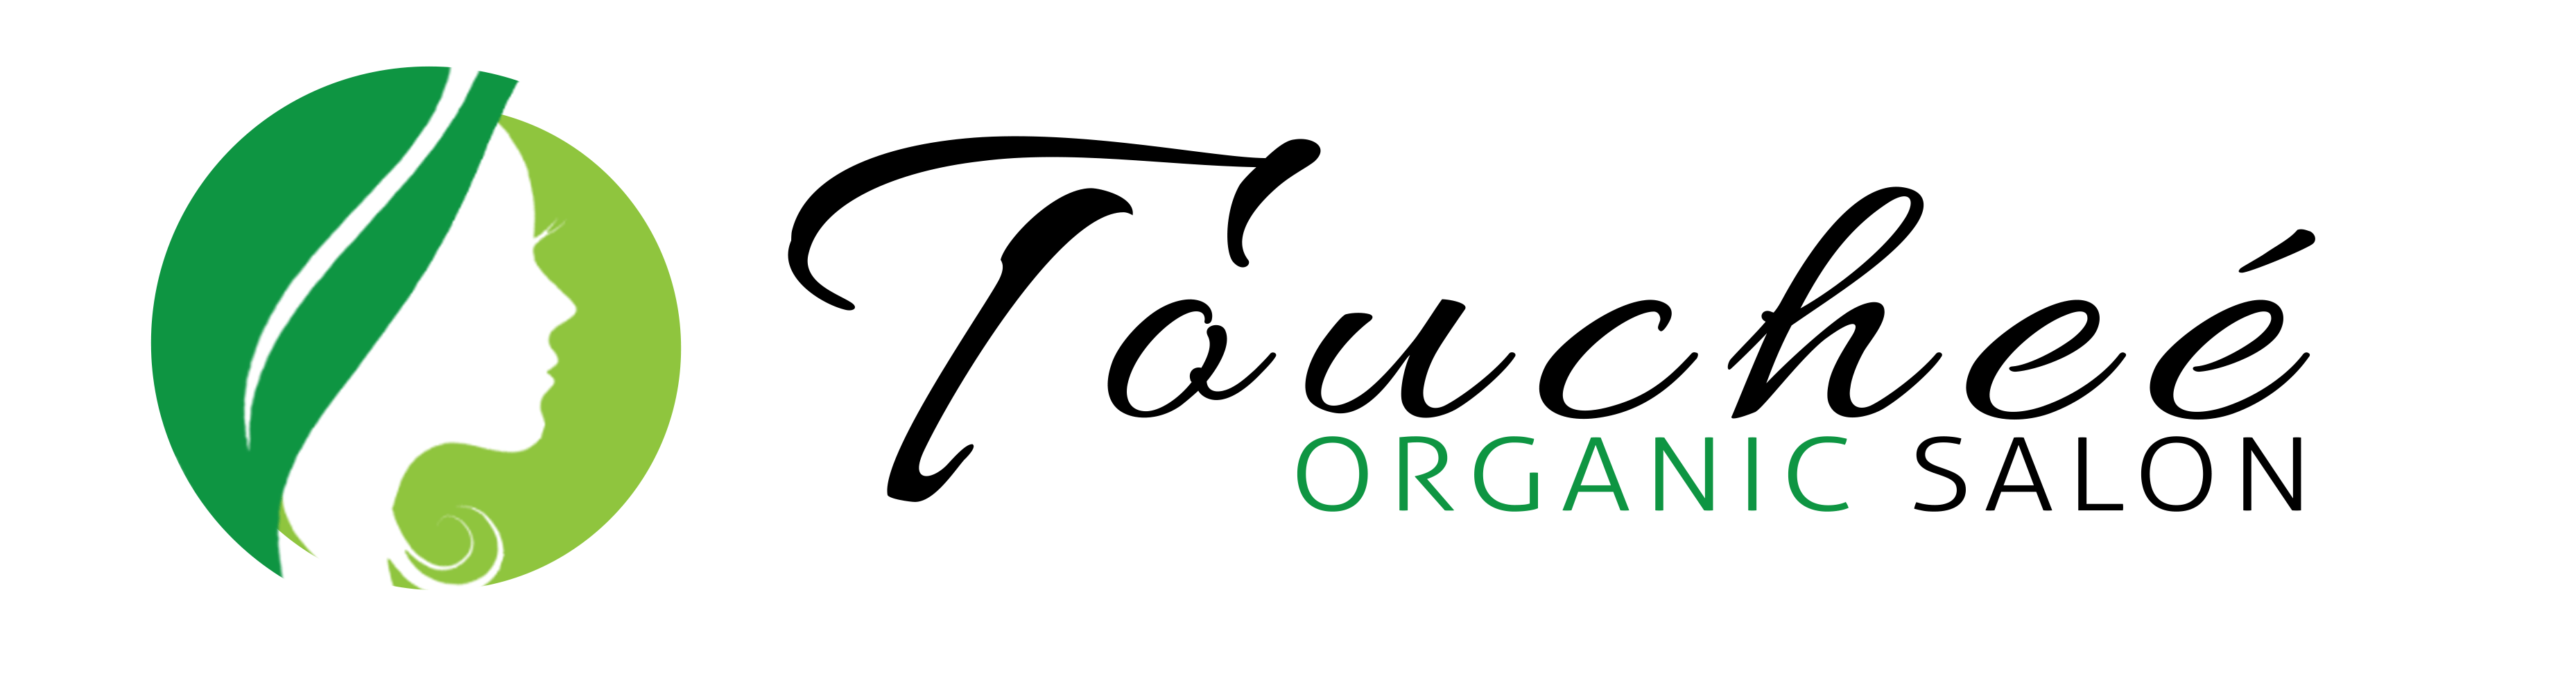 Glaze Hair Organic Salon Logo